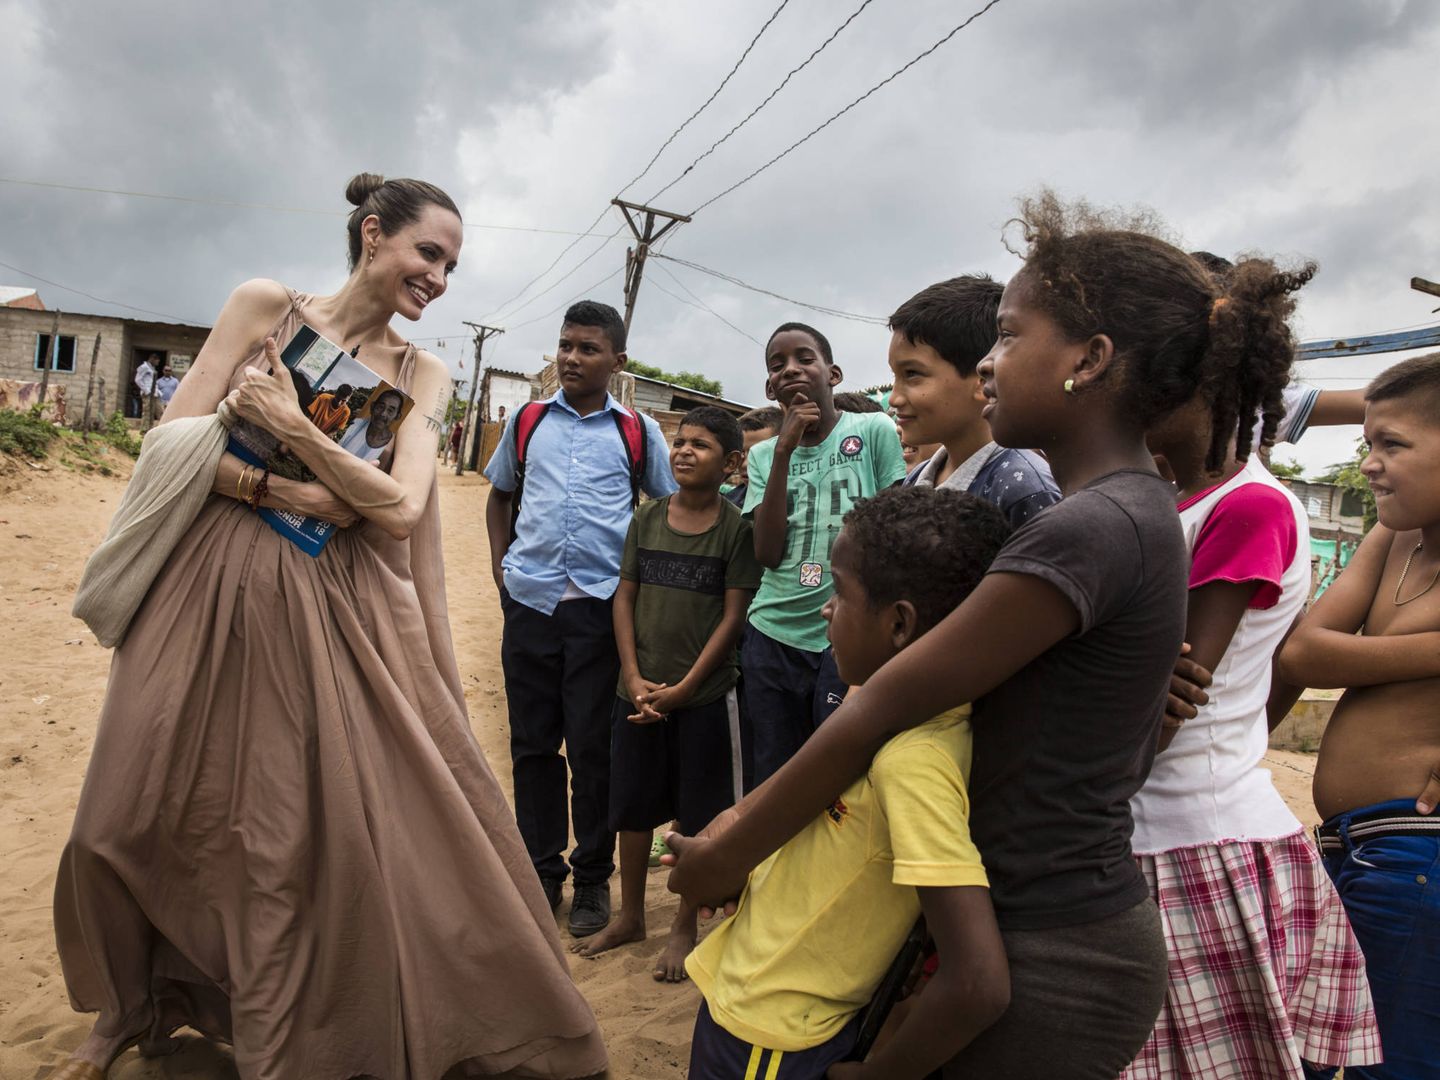  Jolie, en un viaje con ACNUR a Colombia el año pasado. (Getty)